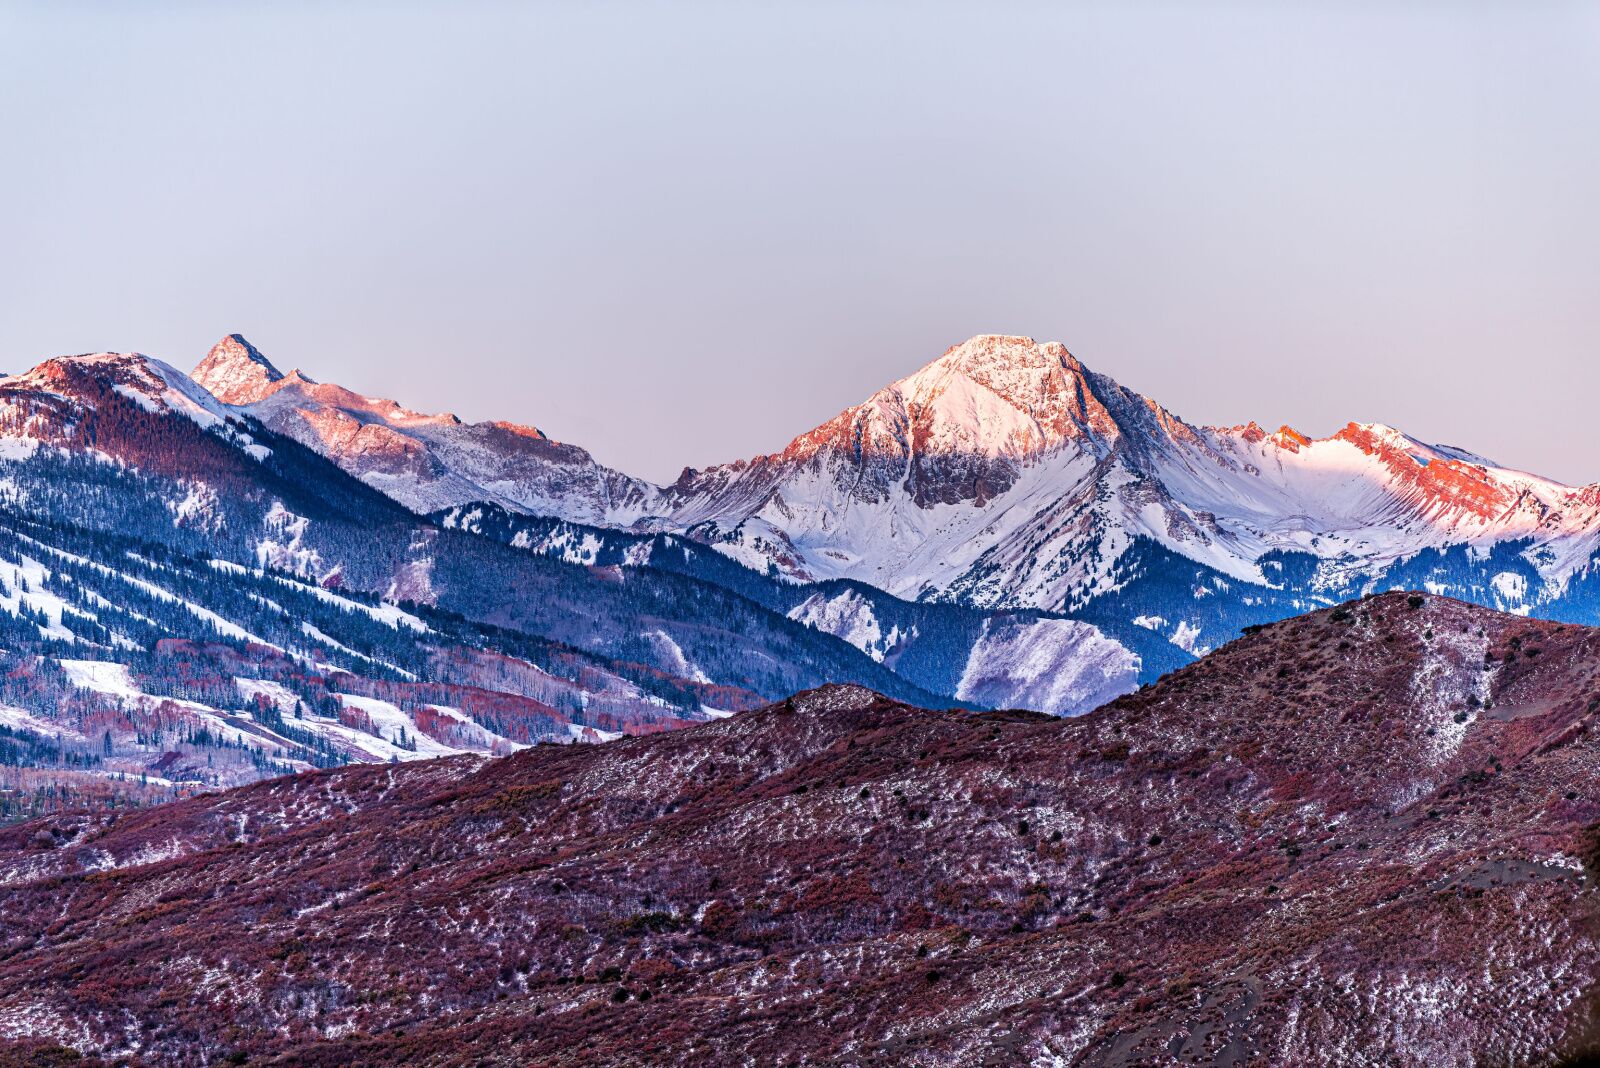 colorado 14ers - capitol peak 